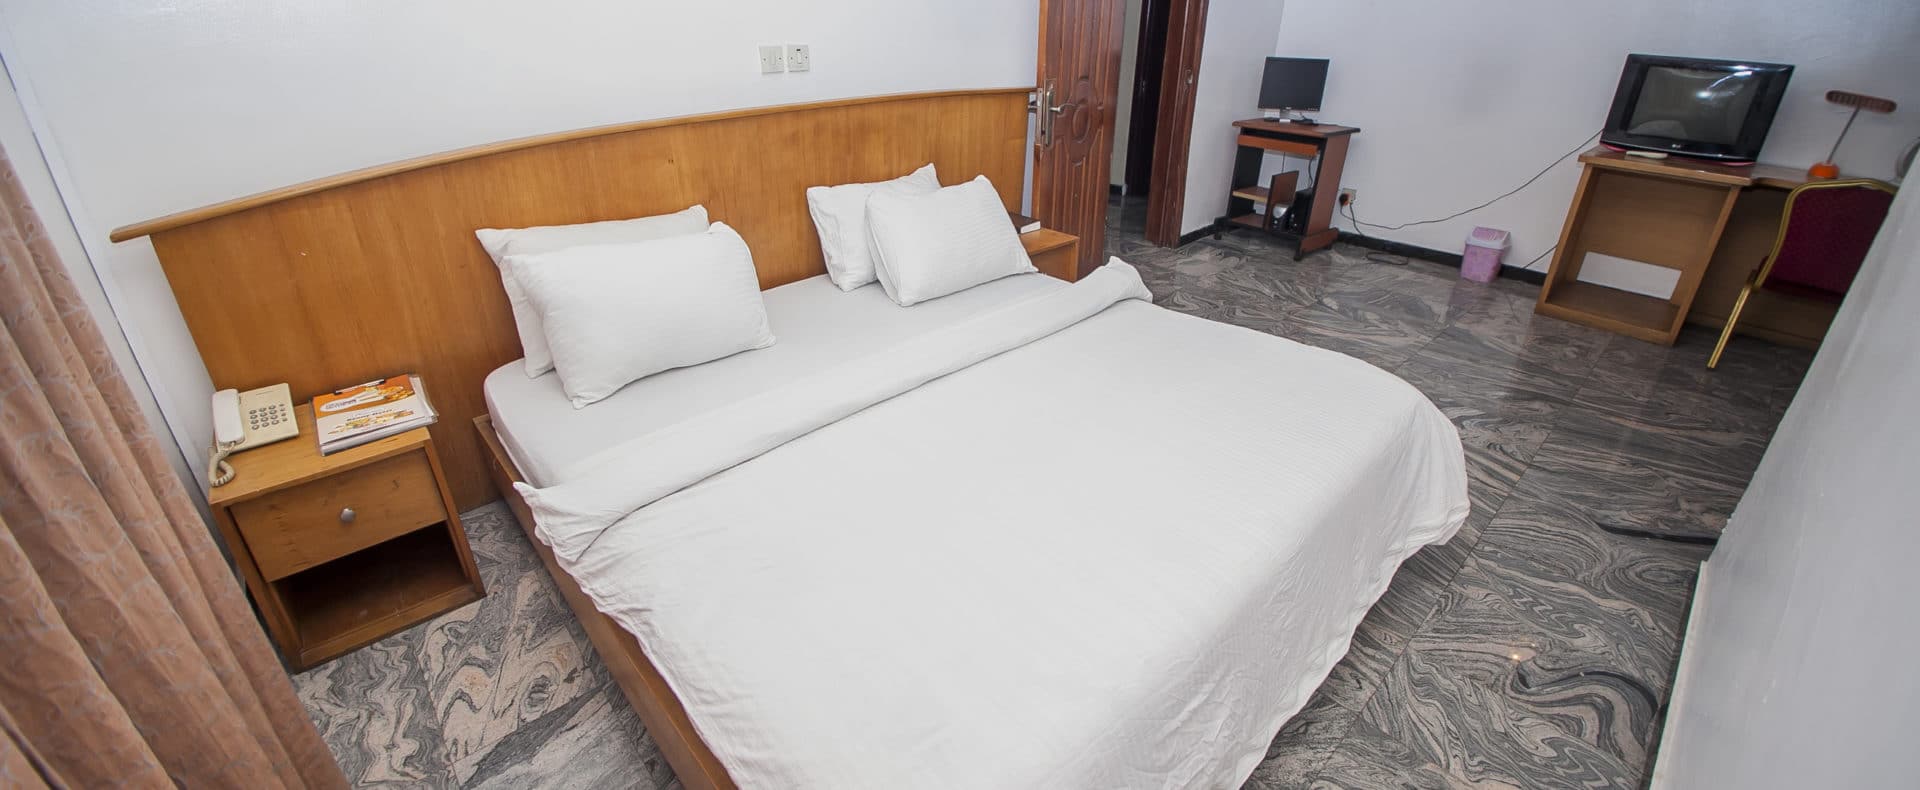 Hotel Suite In Lagos Nigeria